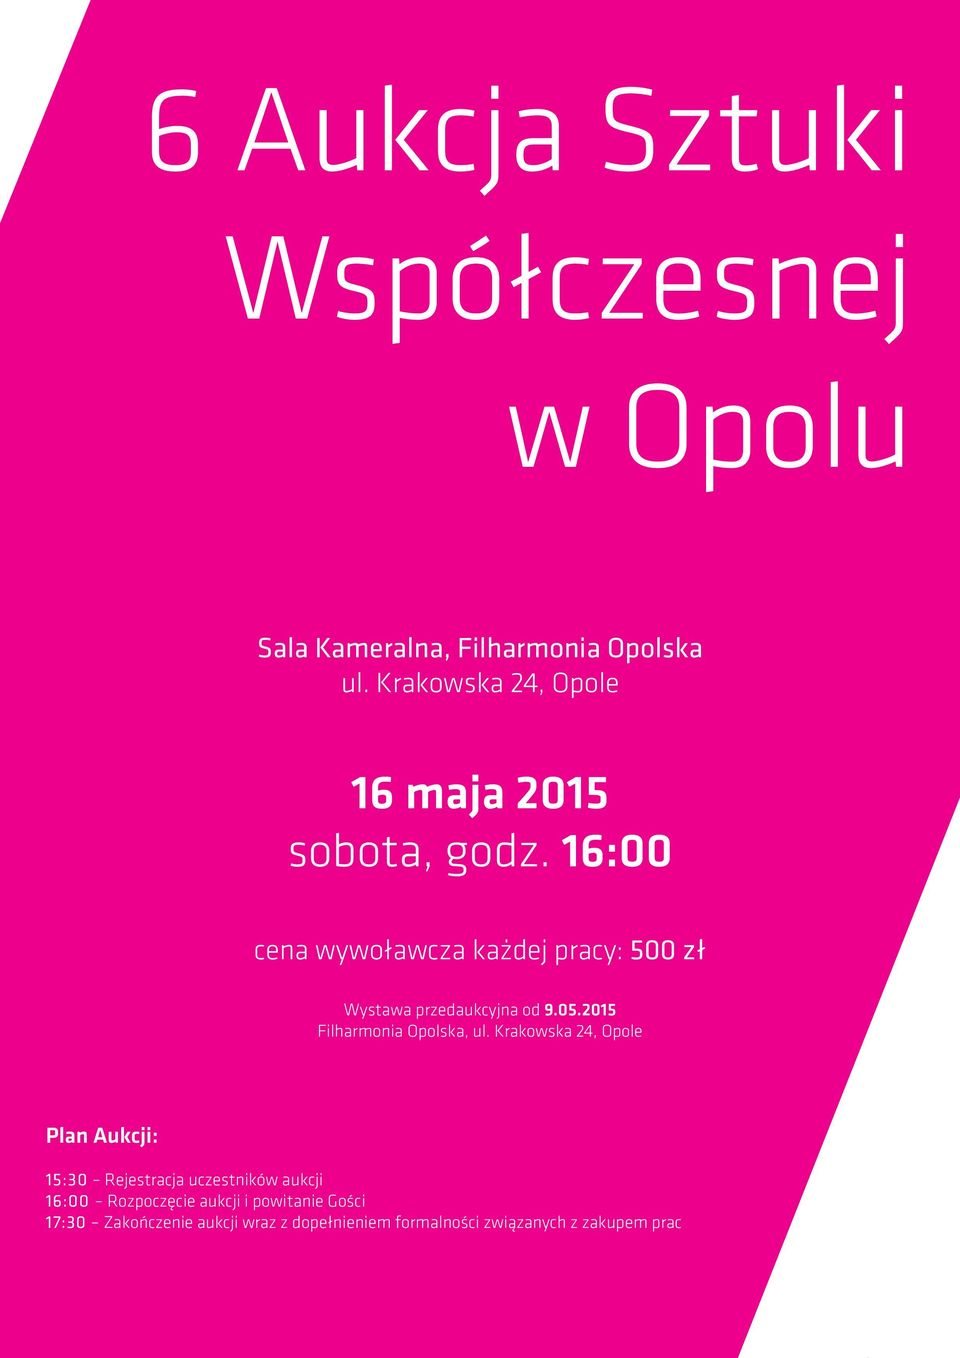 16:00 cena wywoławcza każdej pracy: 500 zł Wystawa przedaukcyjna od 9.05.2015 Filharmonia Opolska, ul.